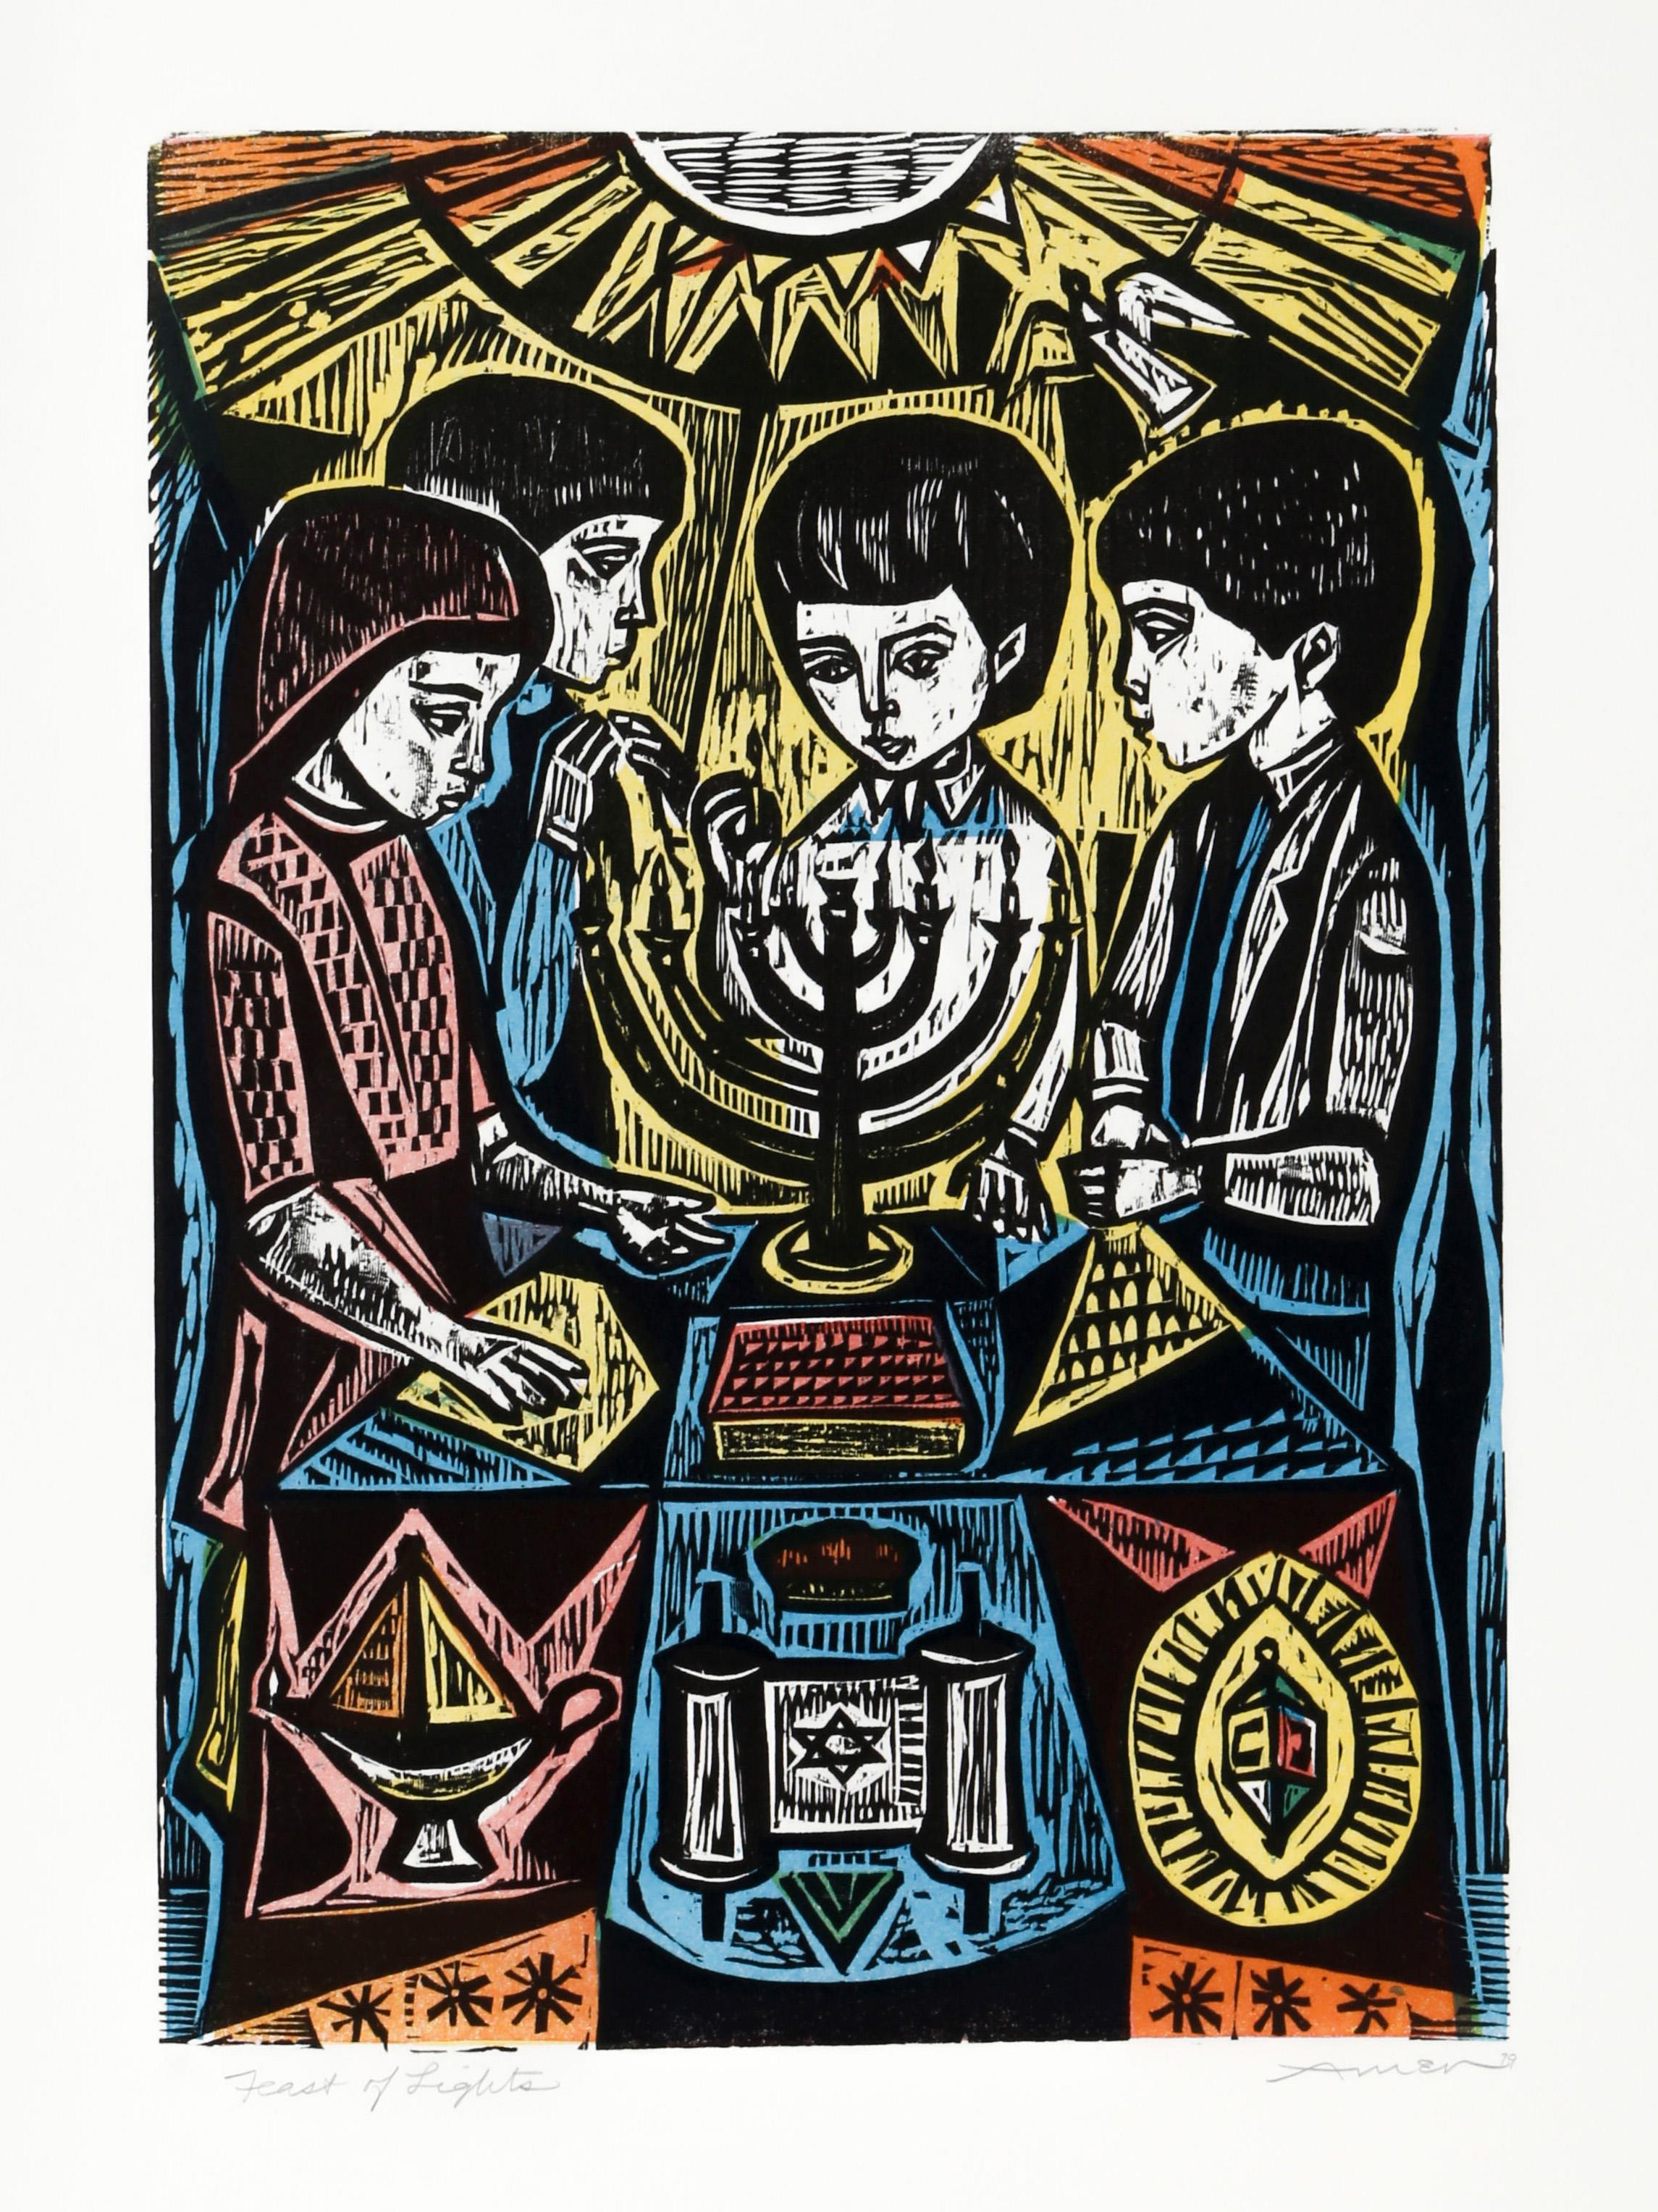 Dieser dreifarbige Holzschnitt zeigt Kinder, die sich zu Hannukah, dem jüdischen Lichterfest, um eine Menora versammelt haben. Da anscheinend alle Kerzen angezündet sind, ist es wahrscheinlich, dass es sich um die achte und letzte Nacht des Festes